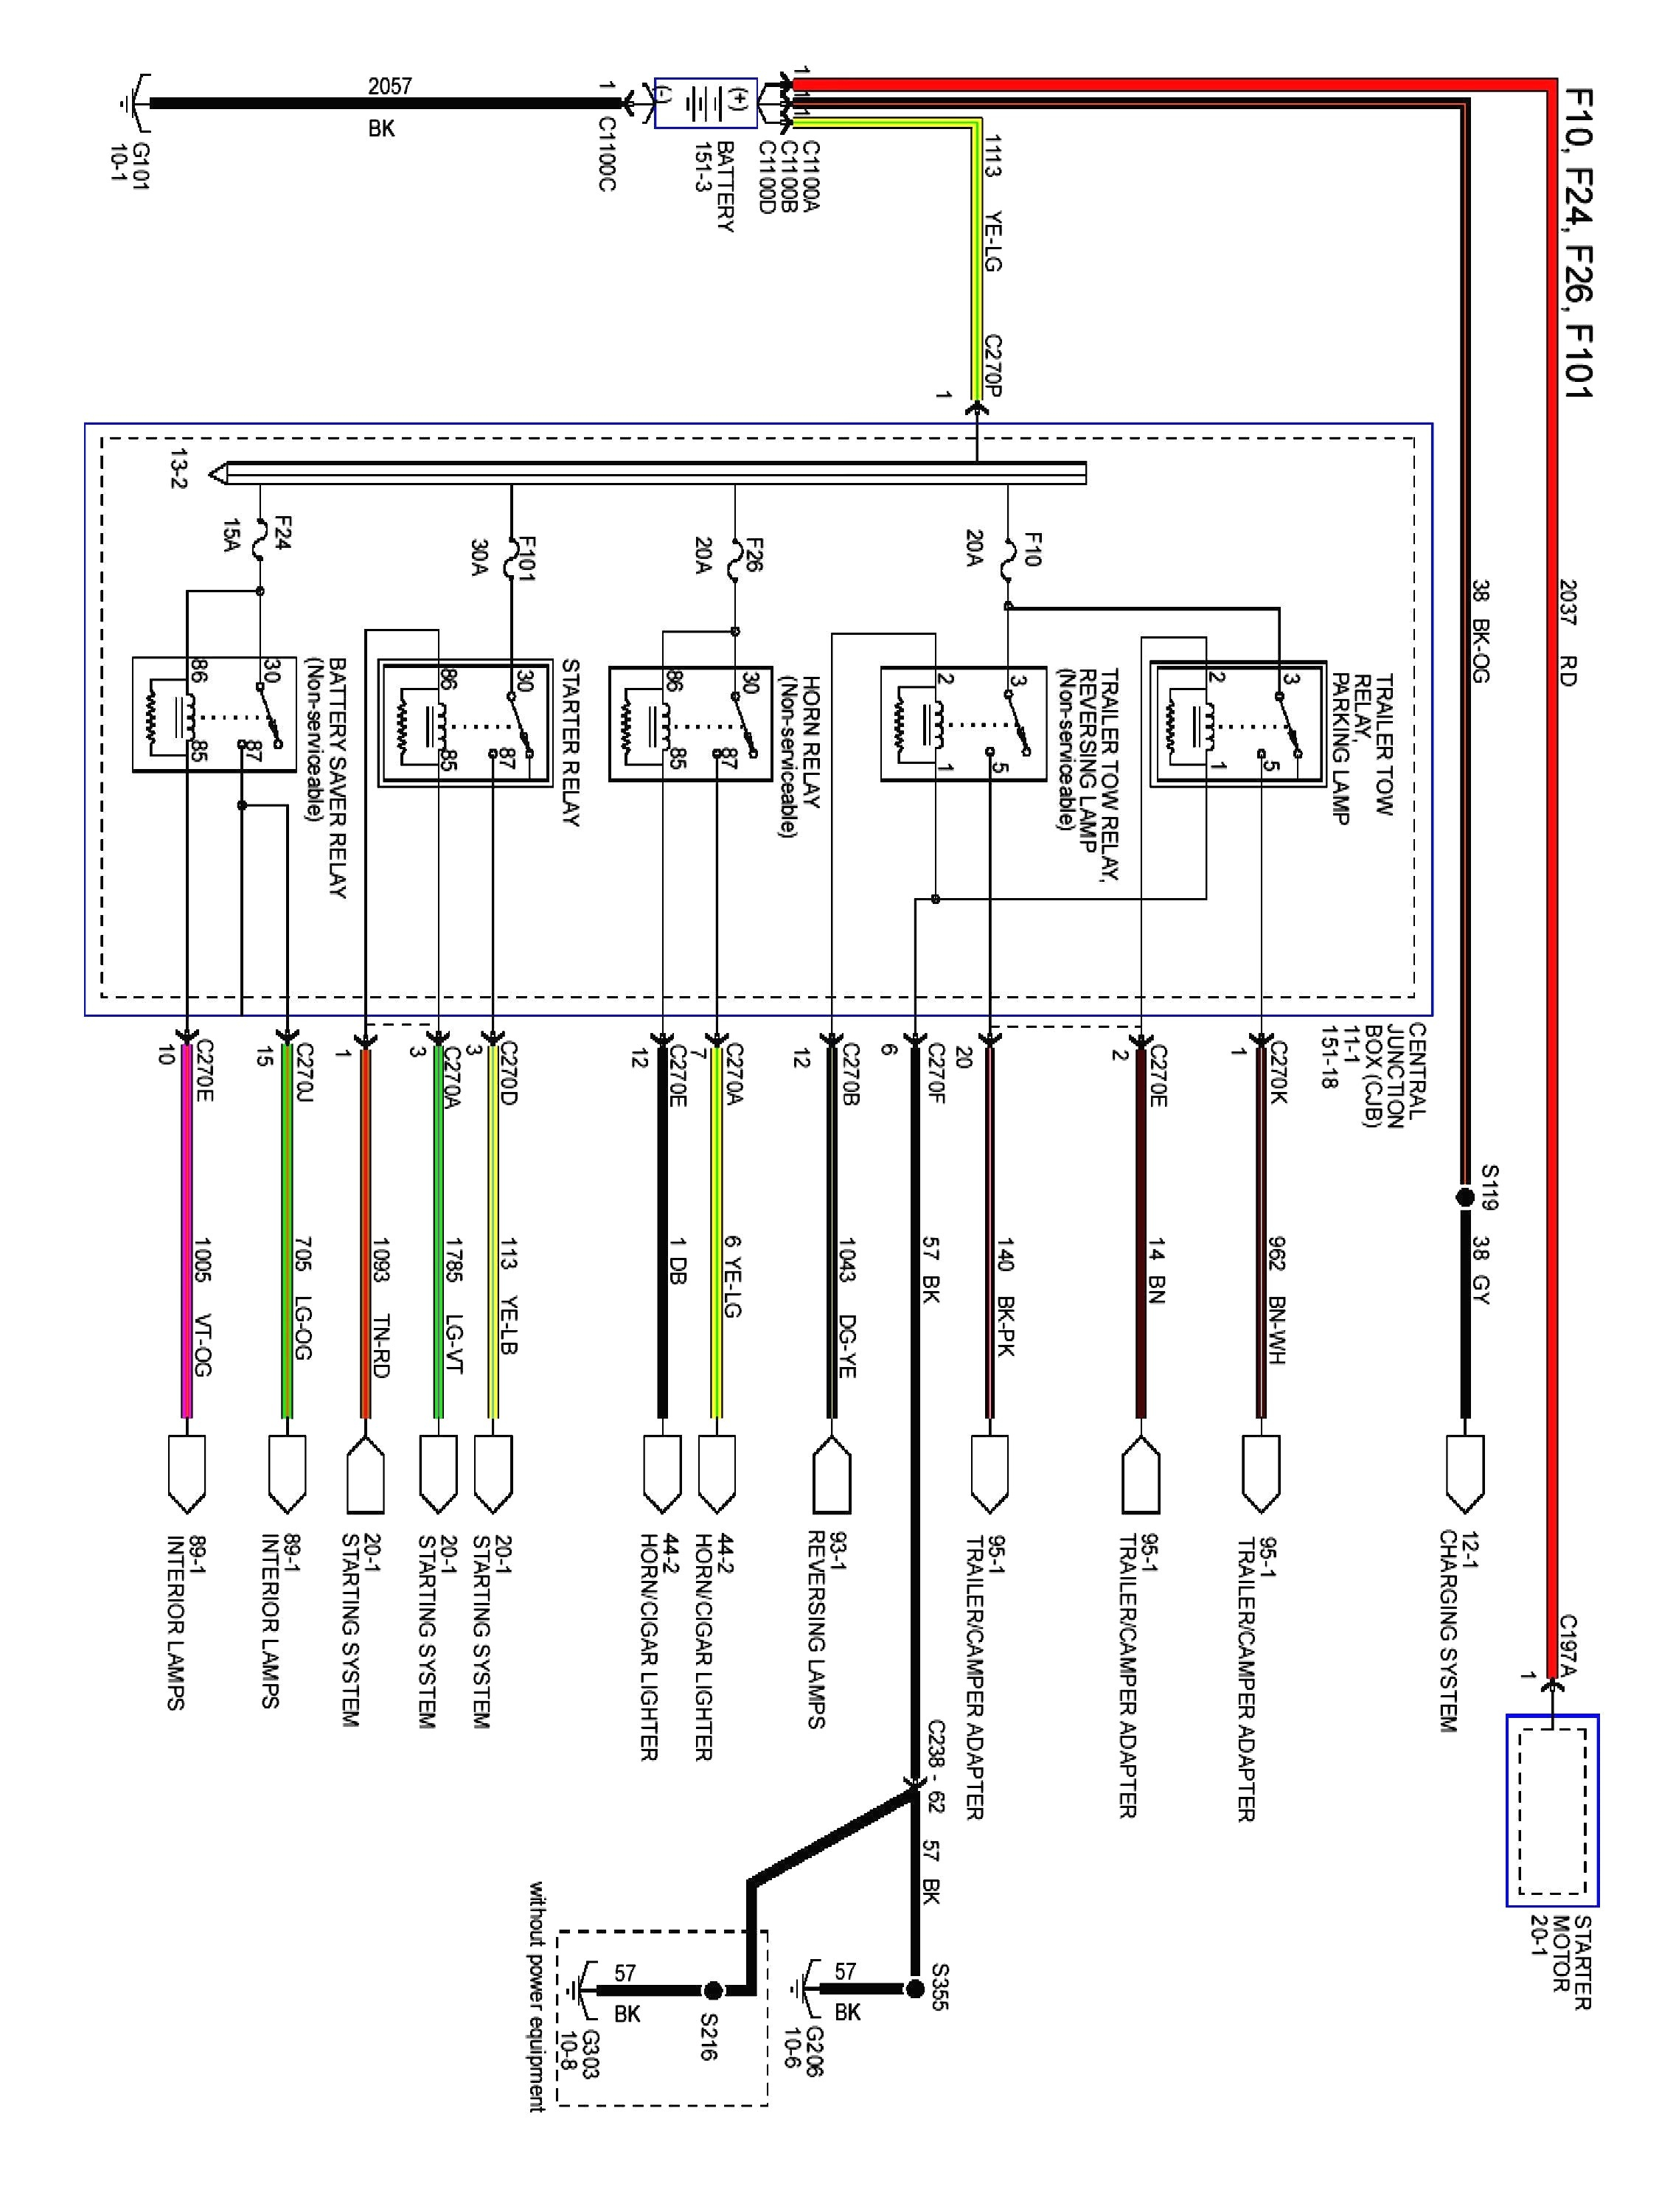 ford xl2f radio wiring diagram wiring diagram note ford xl2f radio wiring diagram